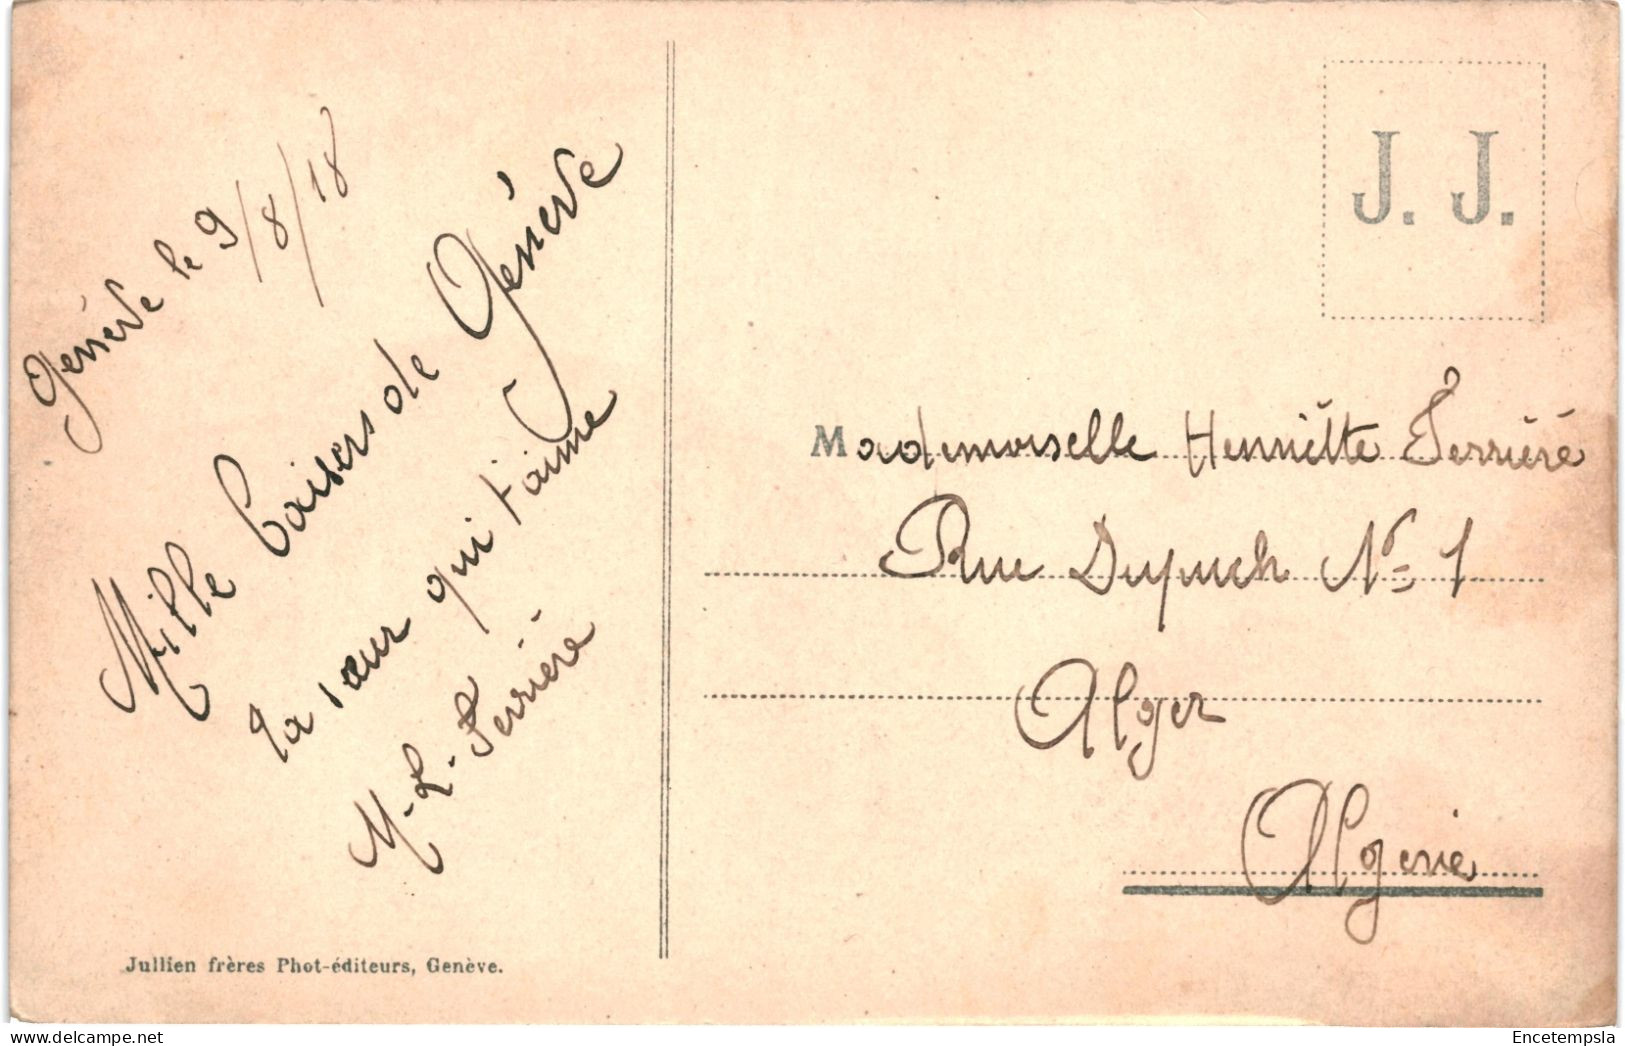 CPA Carte Postale Suisse Veytaux  Château De Chillon  Dent Du Midi 1918 VM65564 - Veytaux